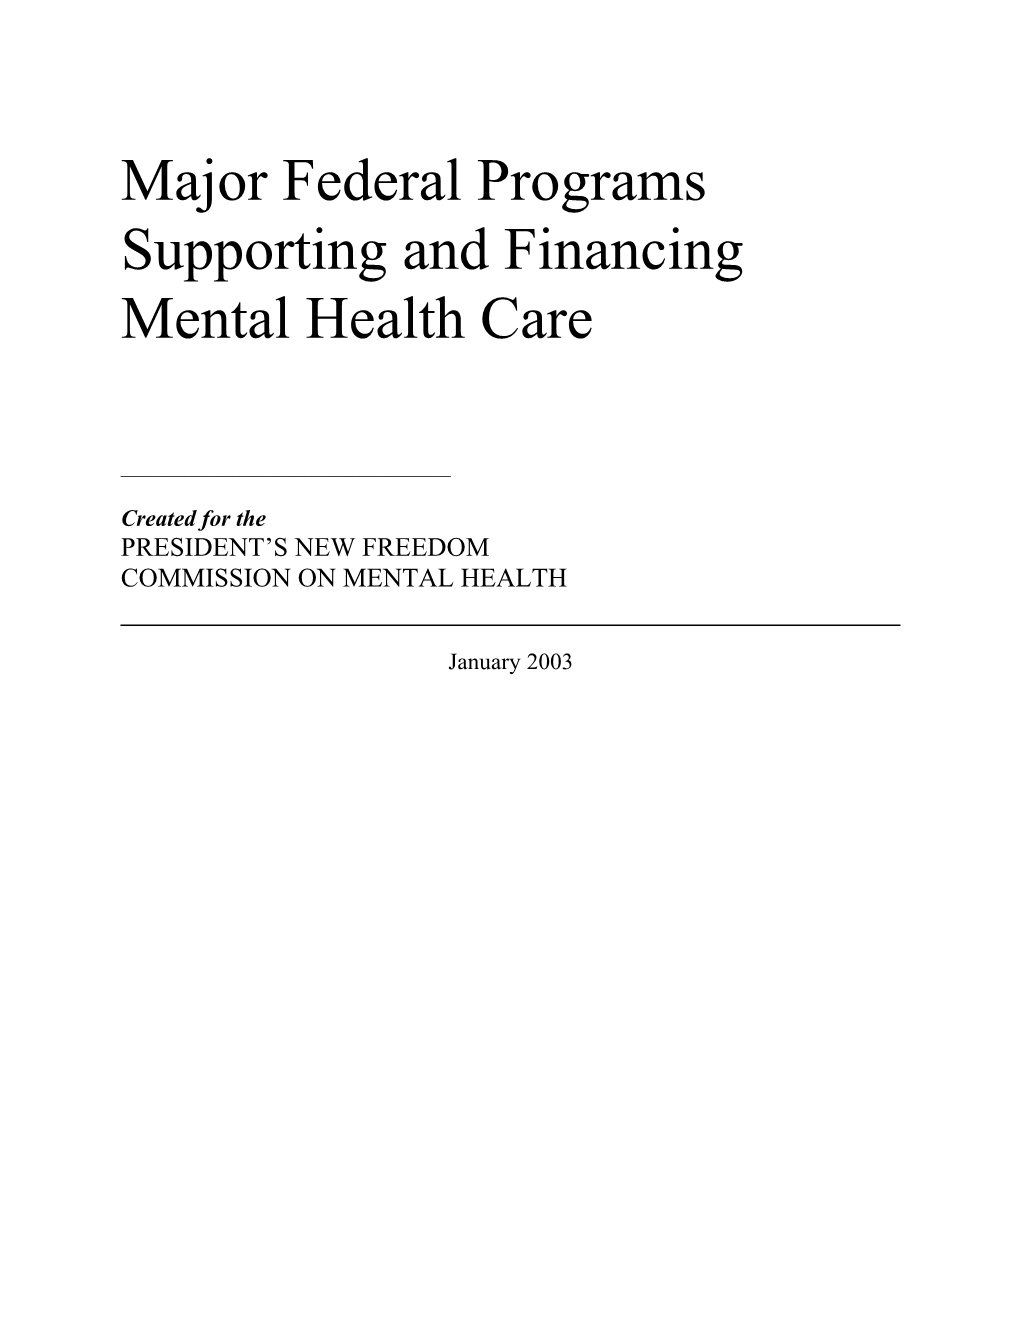 Federal Programs Eligibility Analysis